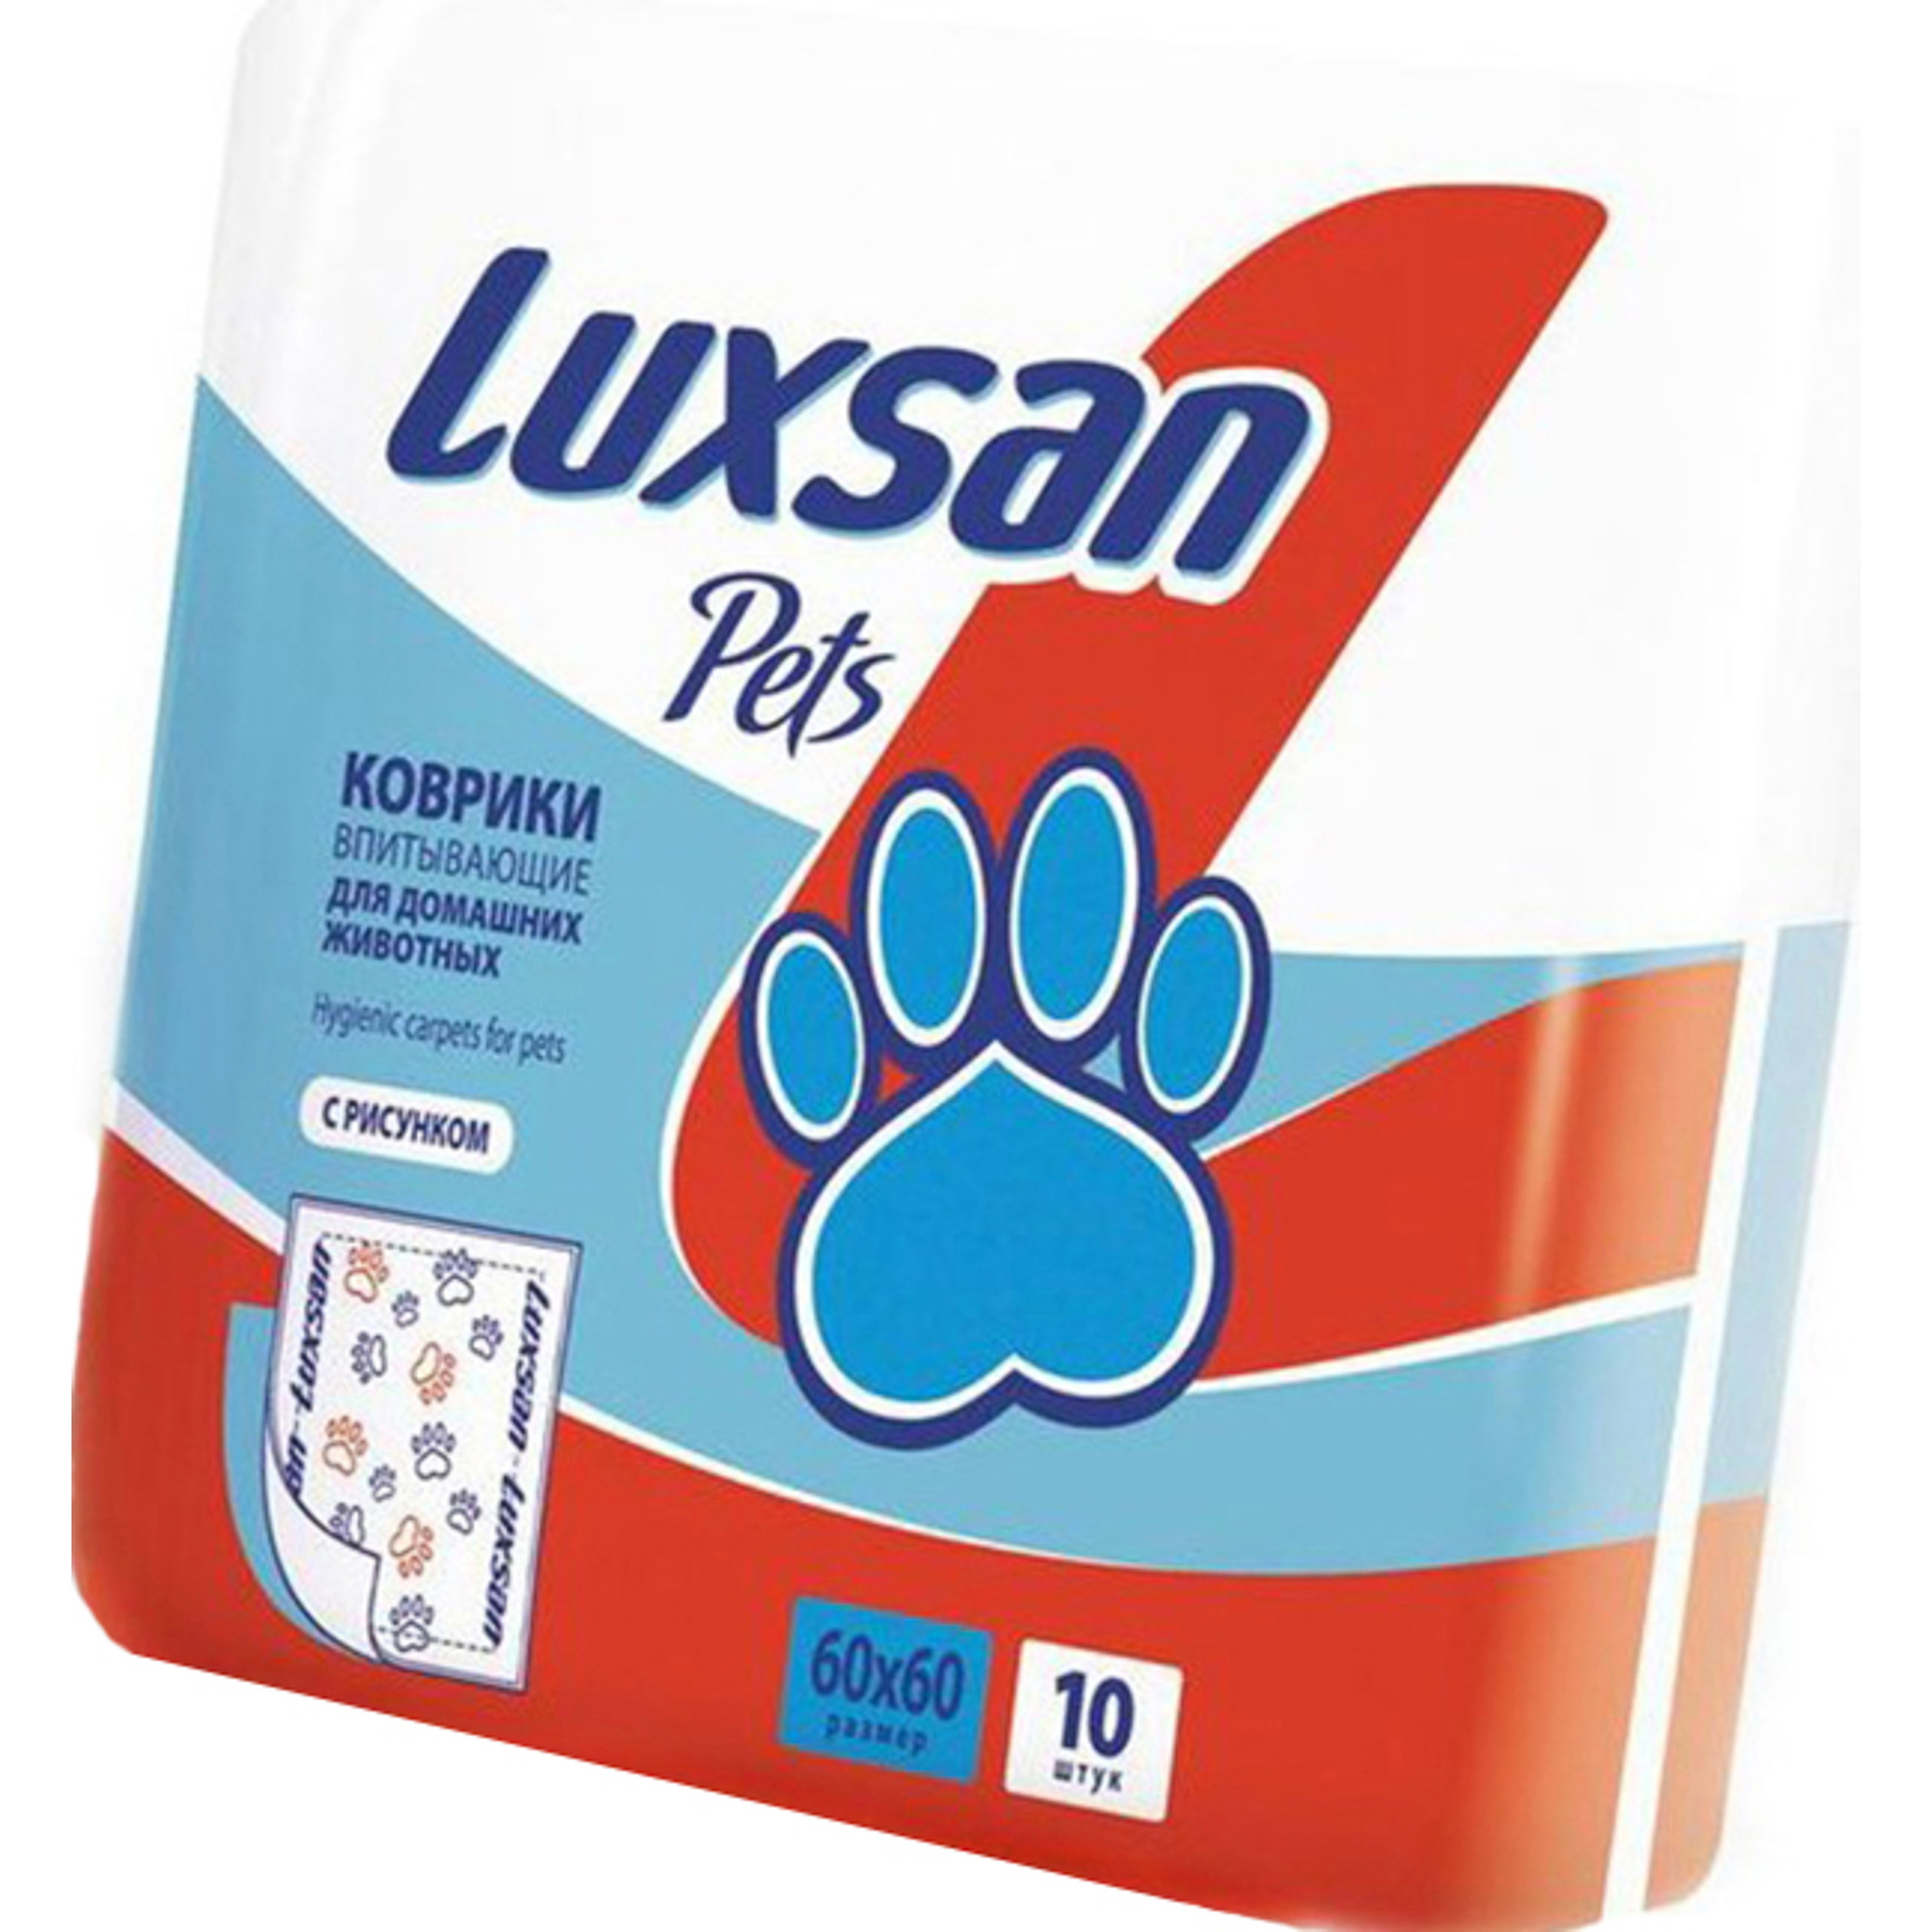 Пеленки pets. Luxsan normal коврики впитывающие (30 шт), 60*60см. Пеленки Luxsan 60х90. Коврики впитывающие для домашних животных 60х90 Luxsan. Пеленки для животных 60х90 Luxsan.